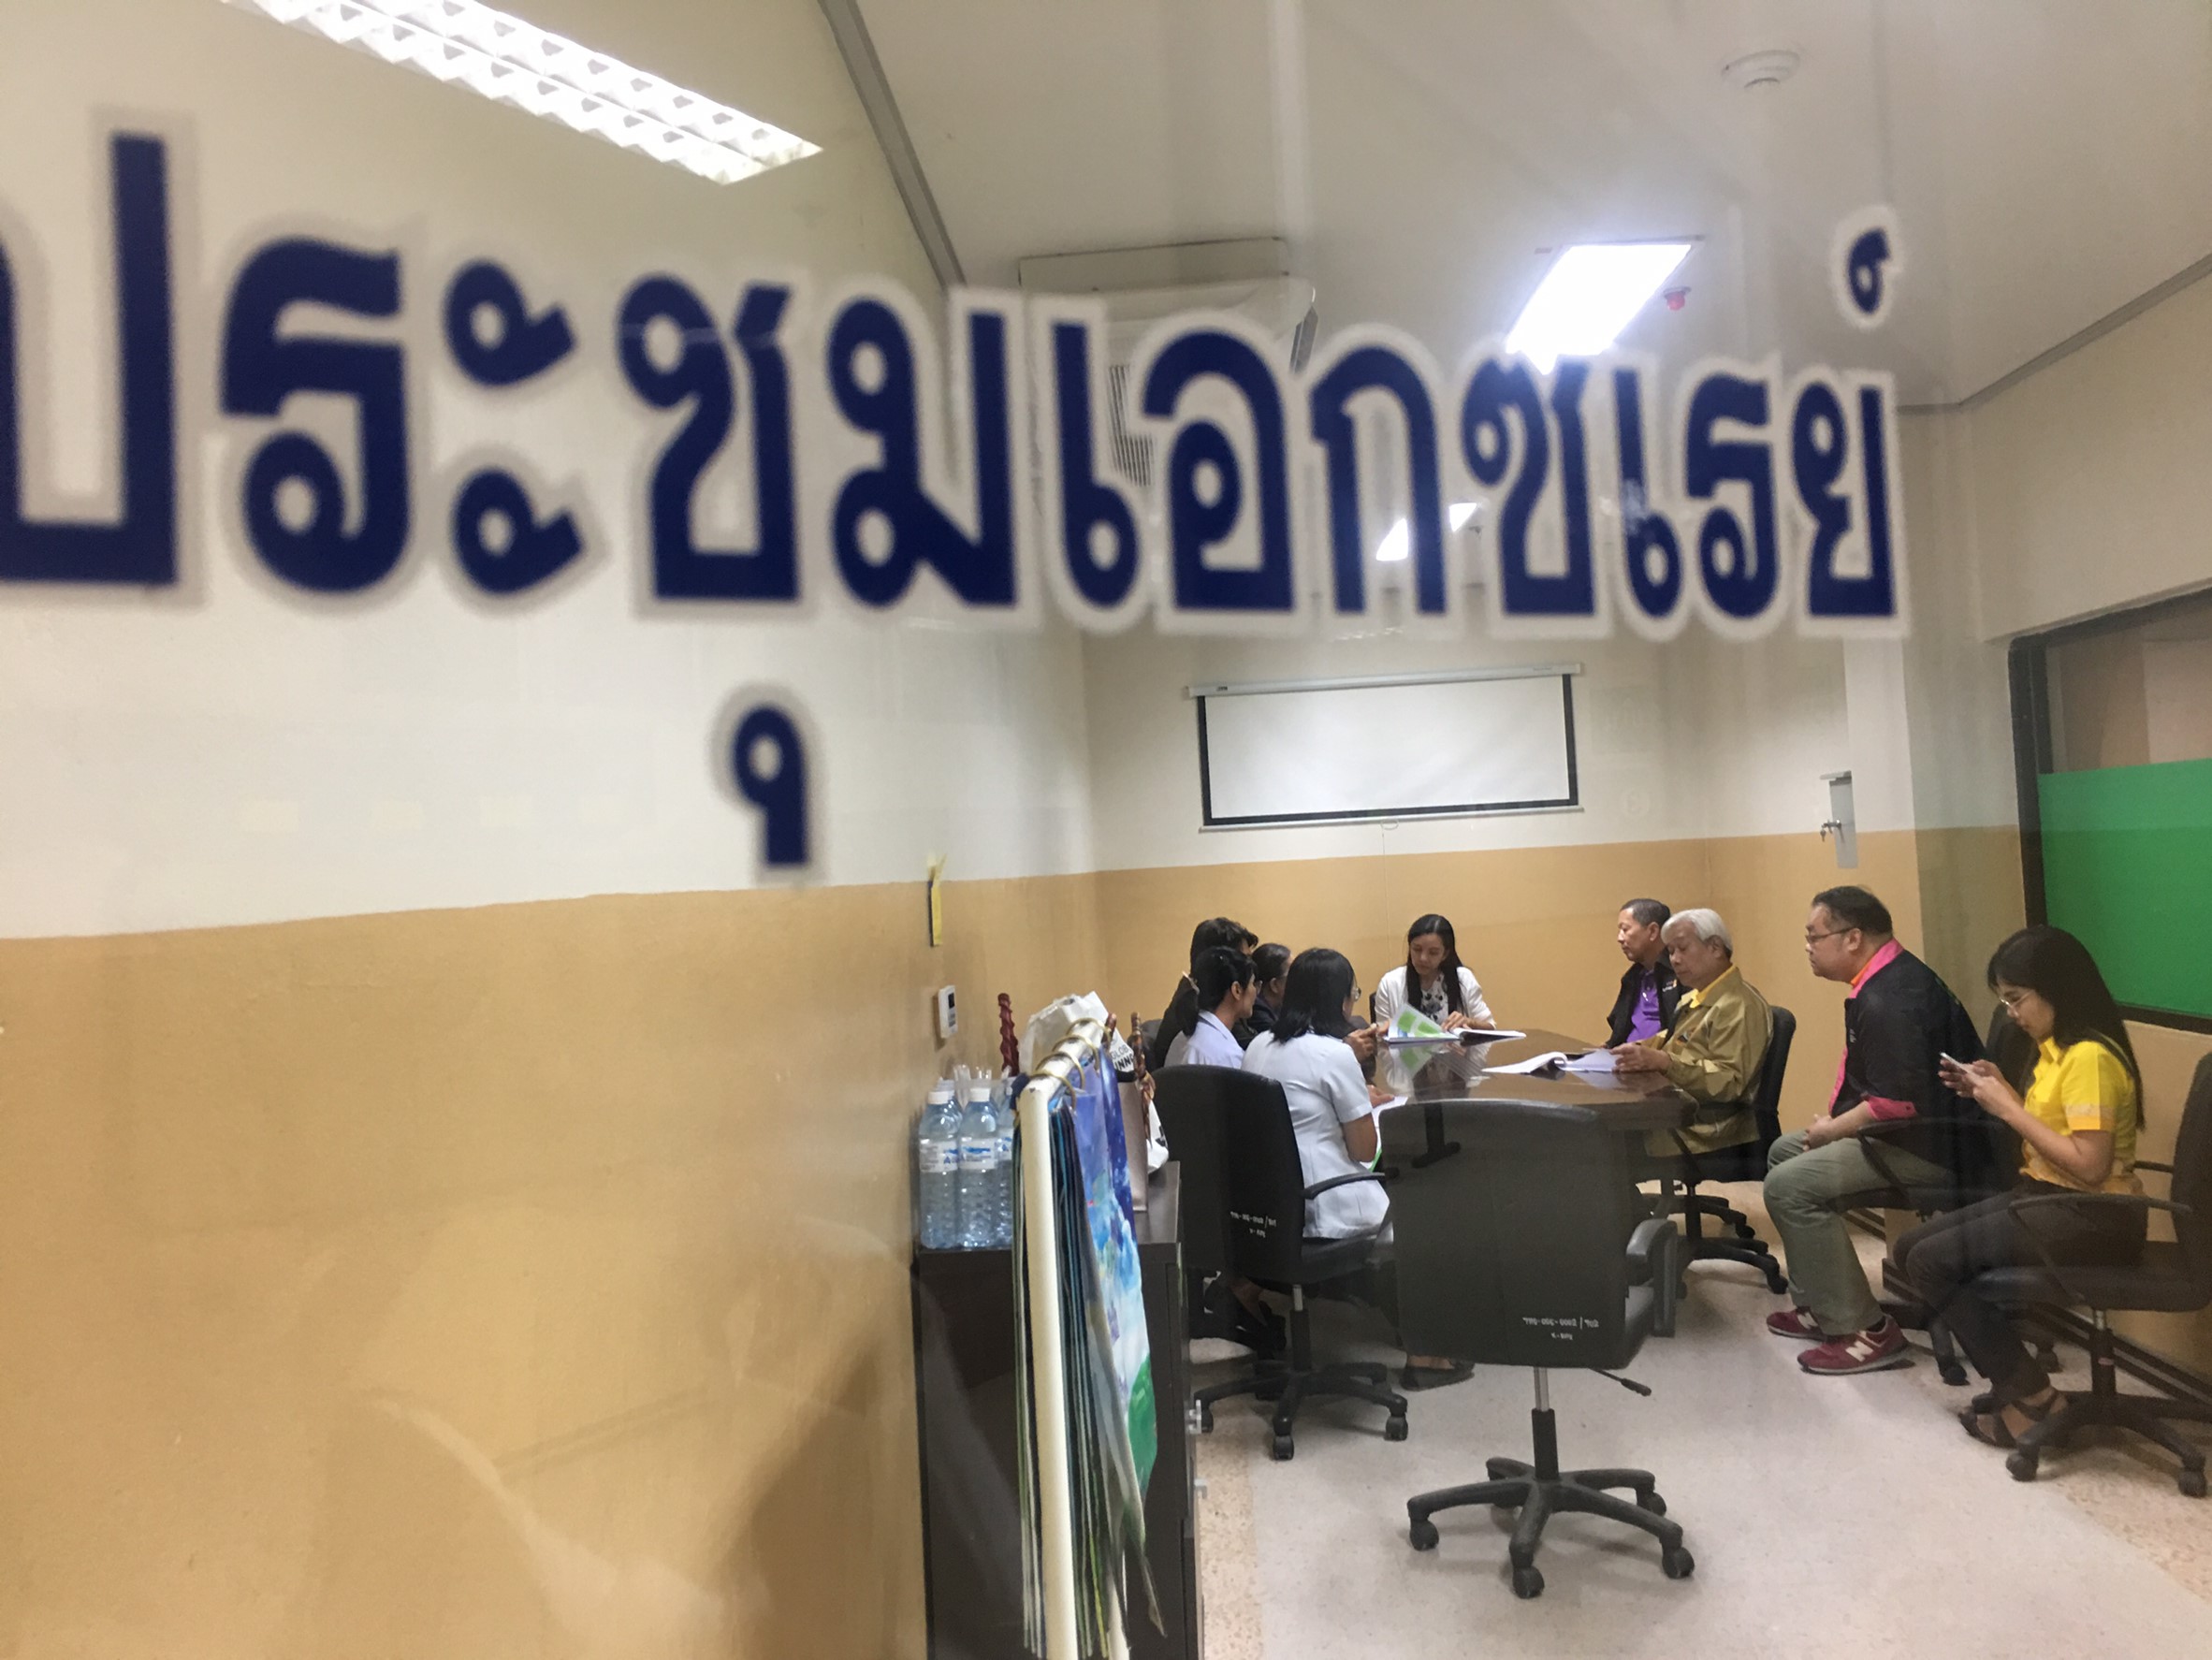 ประชุมวิชาการร่วมกับรังสีการแพทย์แห่งประเทศไทย ครั้งที่17 27-29 พ.ย. - พร้อมเข้าเยี่ยมและให้กำลังใจหน่วยงานรังสีวิทยาในพื้นที่จังหวัดอุบลราชธานีระหว่างวันที่ 25-26 พฤศจิกายน 2562 59